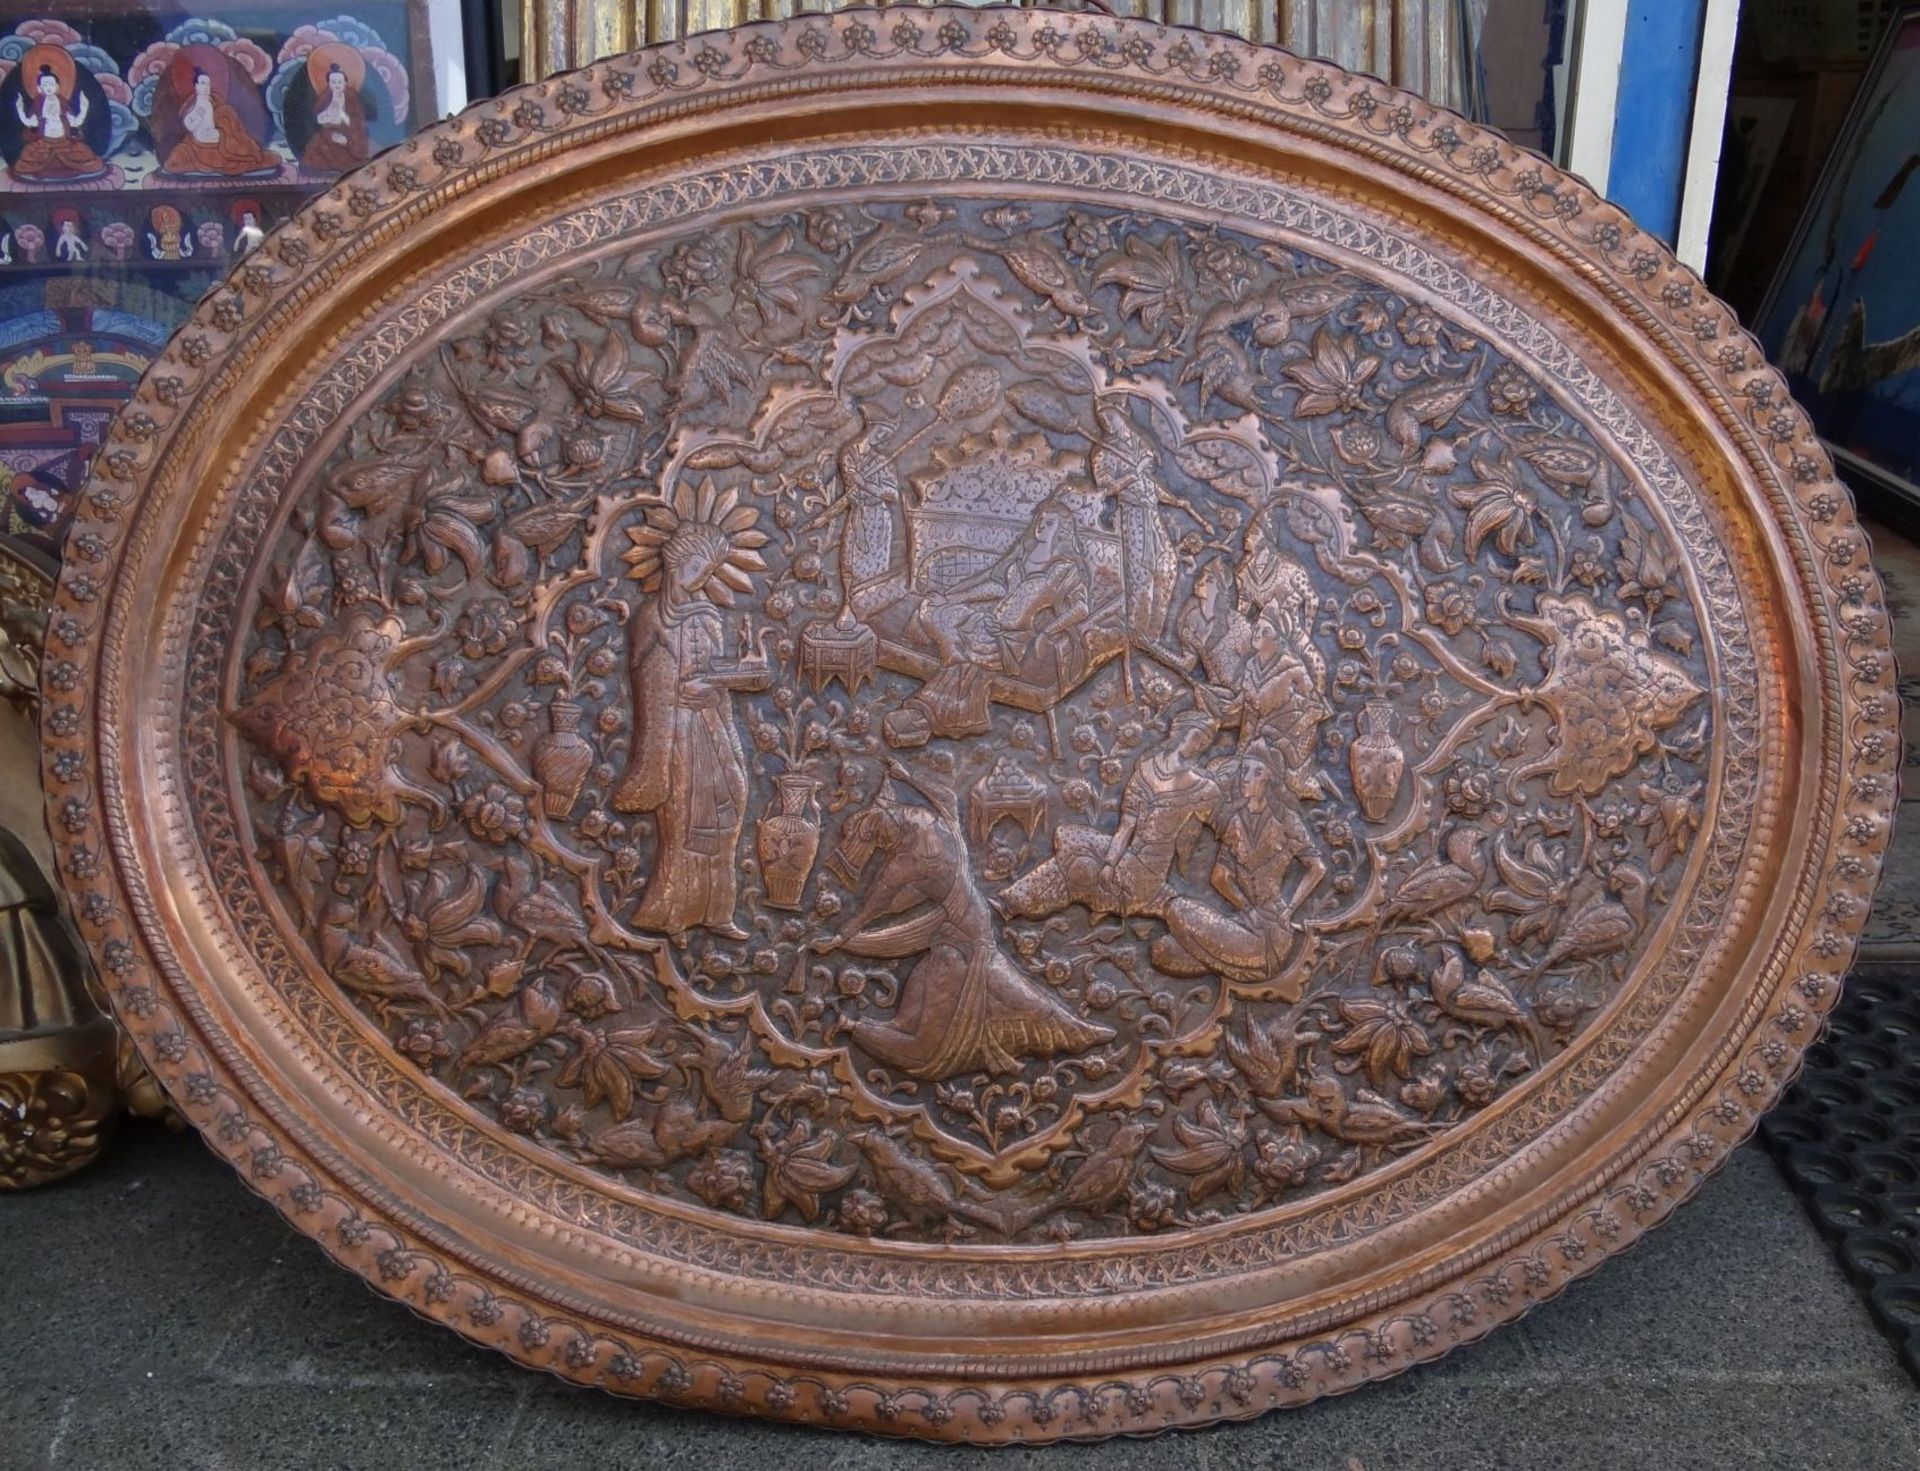 grosse ovale Kupferplatte, handgetriebene Haremszene, Alters-u. Gebrauchsspuren, 75x95 cm, wohl - Bild 2 aus 3